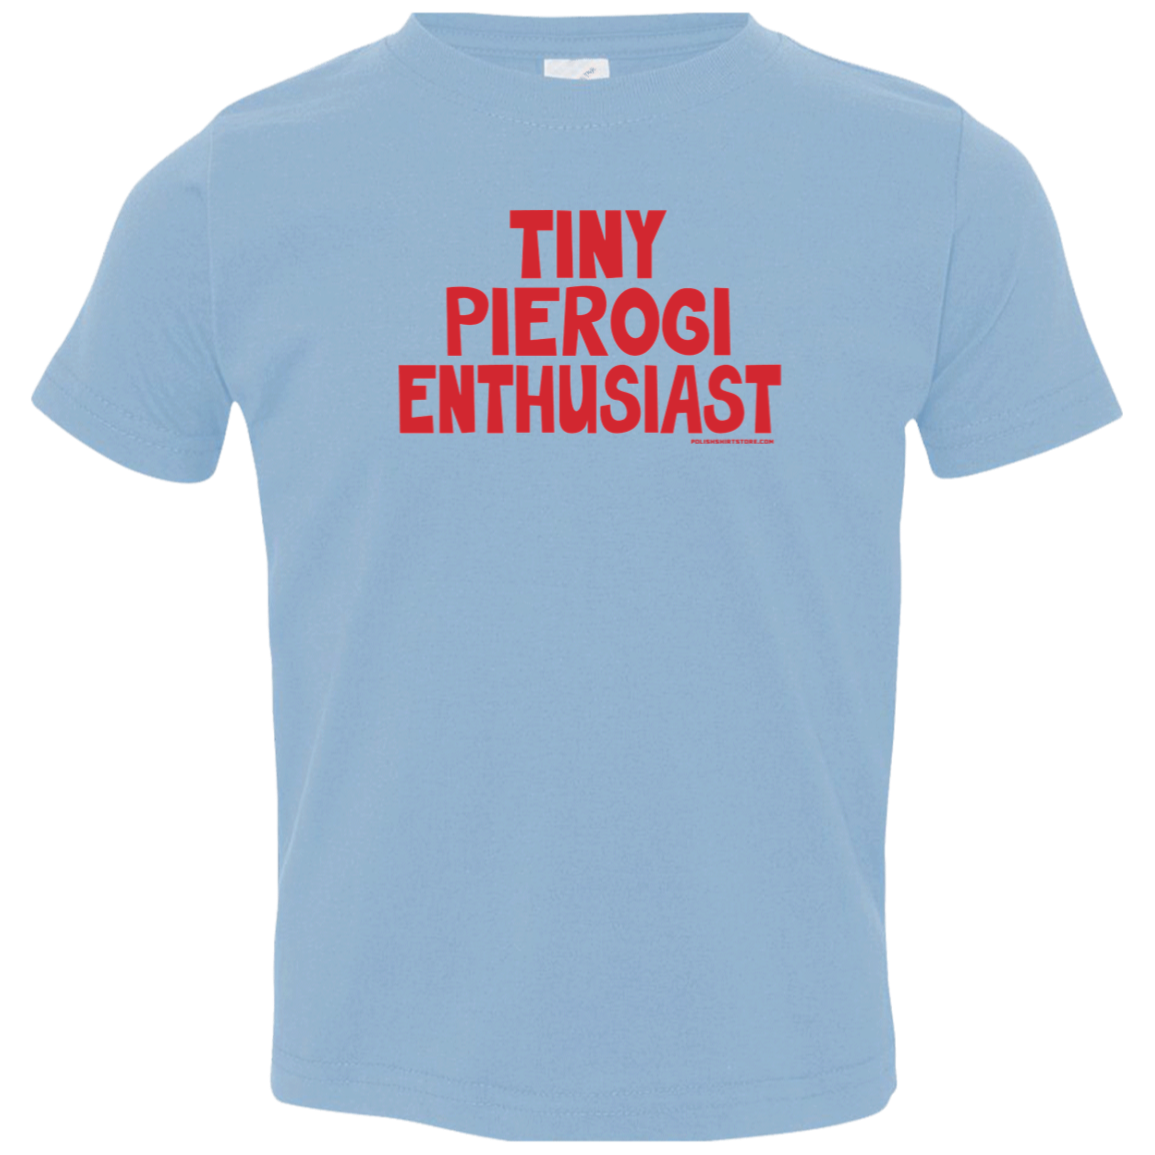 Tiny Pierogi Enthusiast Infant & Toddler T-Shirt Apparel CustomCat Toddler T-Shirt Light Blue 2T